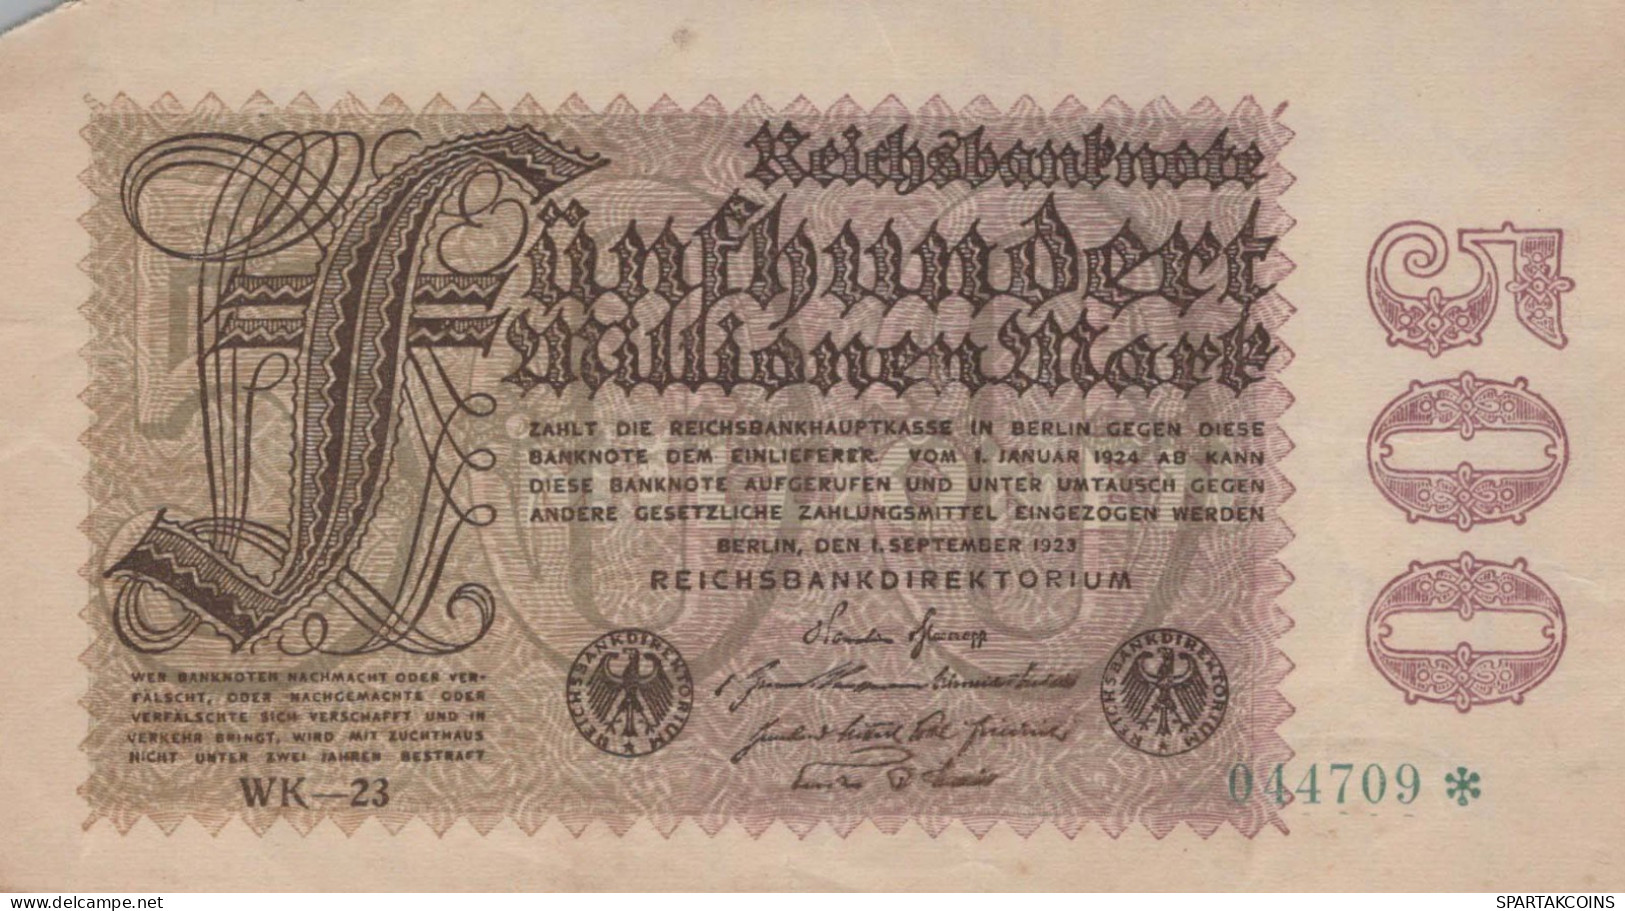 500 MARK 1923 Stadt BERLIN DEUTSCHLAND Notgeld Papiergeld Banknote #PK921 - Lokale Ausgaben